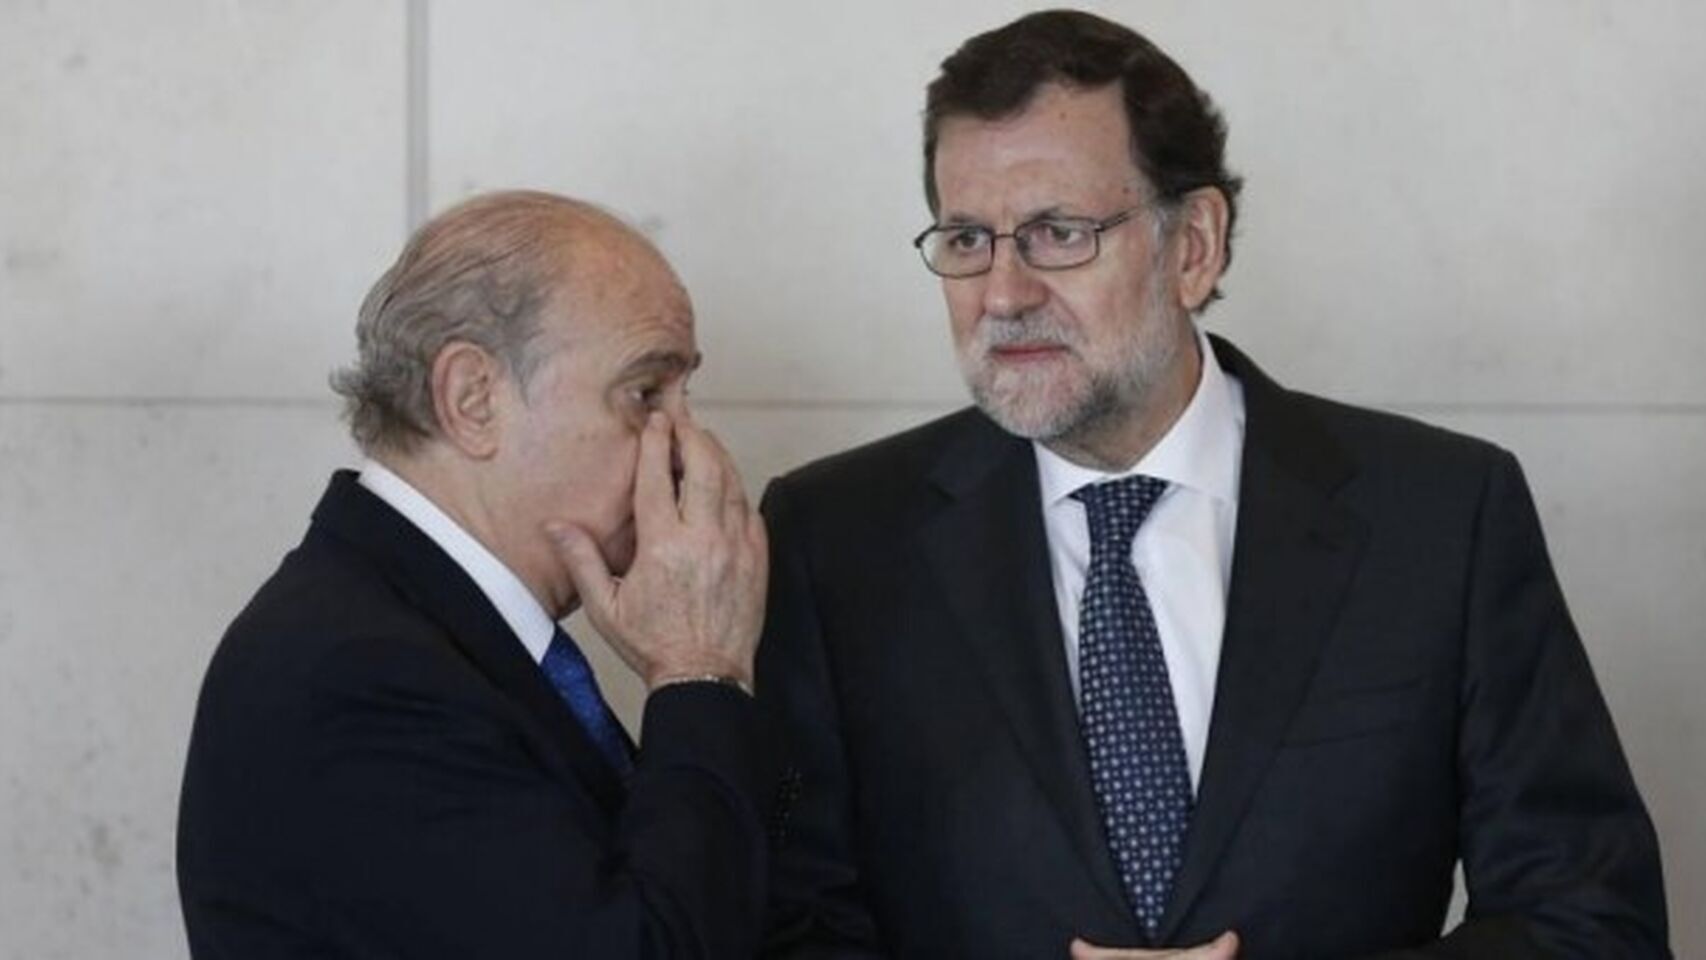 Jorge Fernández Díaz y Mariano Rajoy, en una imagen de archivo.